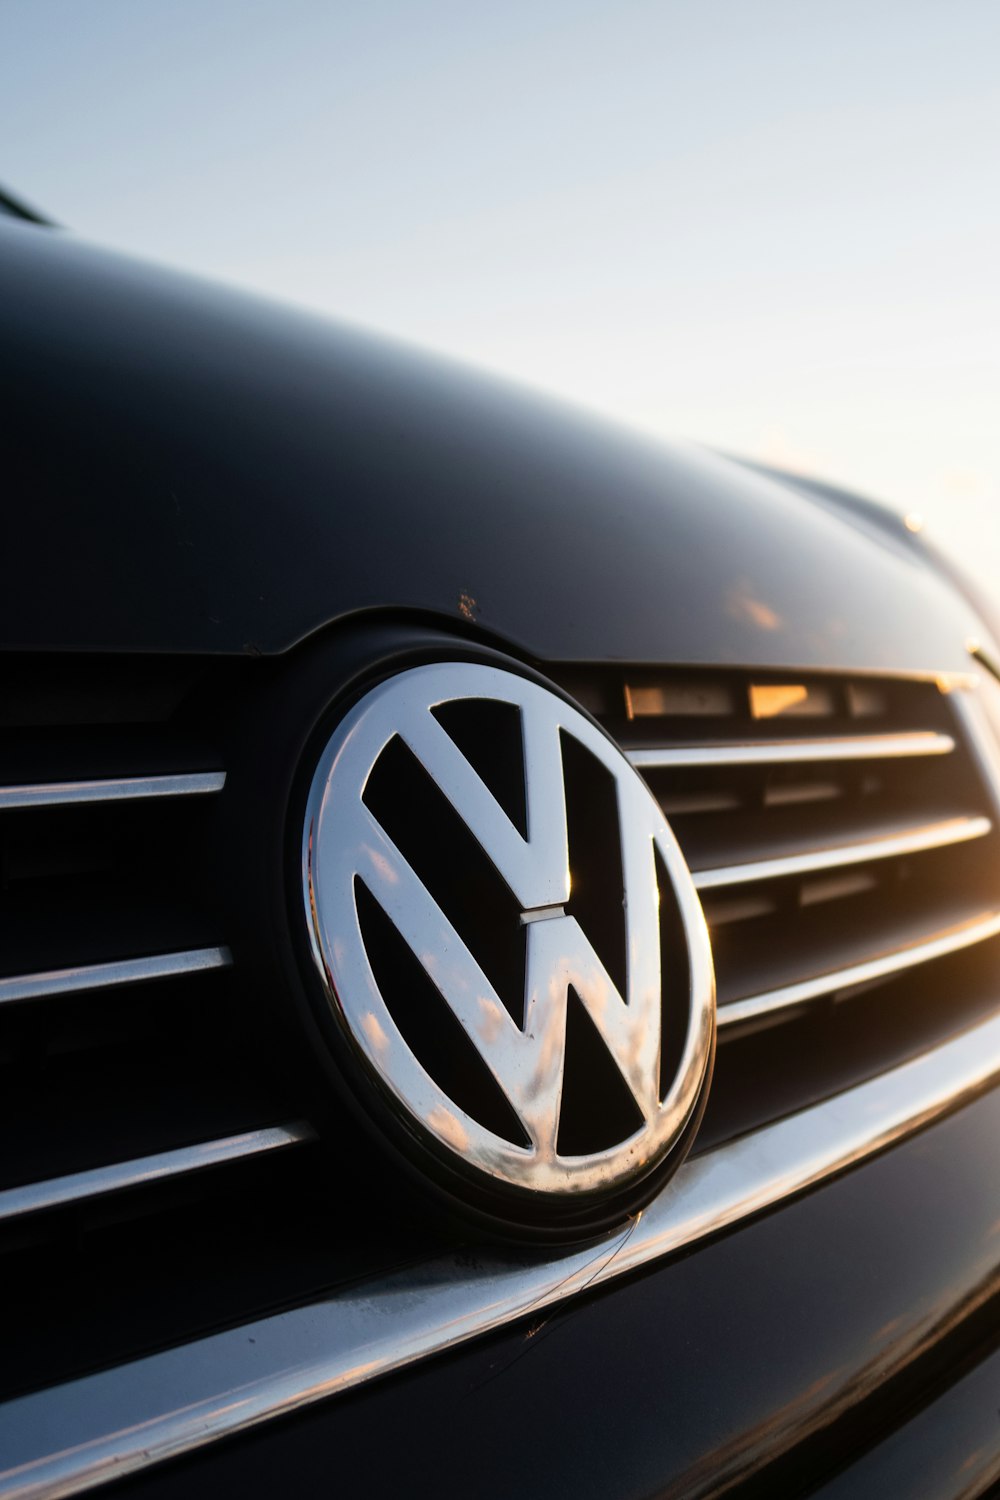 Imágenes de Logotipo De Volkswagen  Descarga imágenes gratuitas en Unsplash